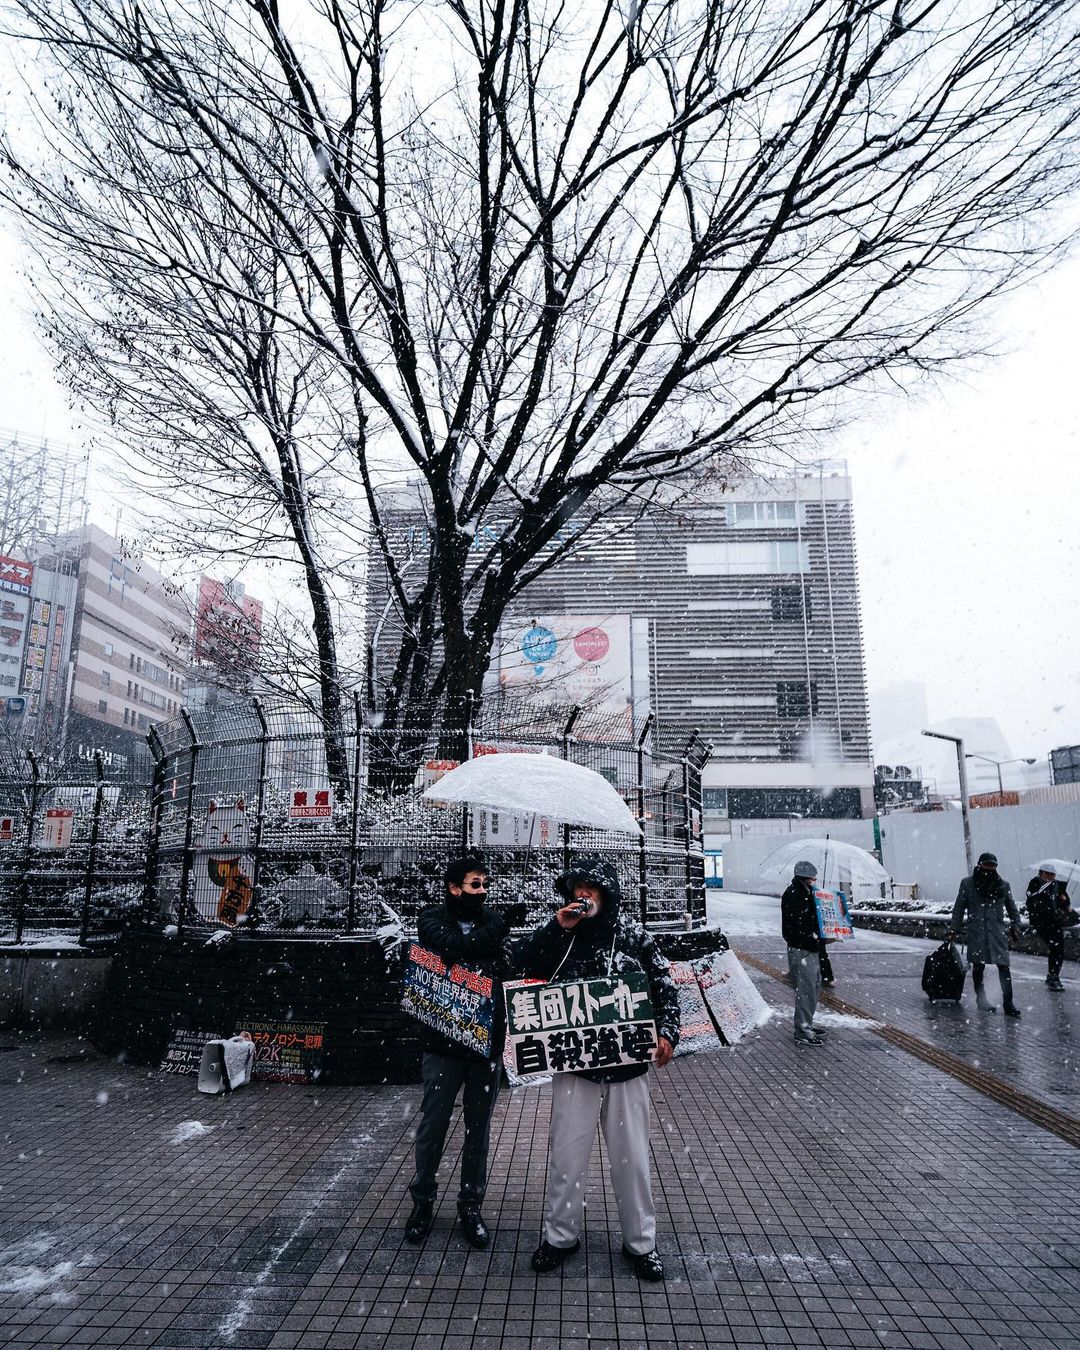 Chùm ảnh: Khung cảnh Tokyo dưới tuyết trắng đẹp đến nao lòng, phảng phất nét buồn tựa cổ tích mùa đông - Ảnh 6.